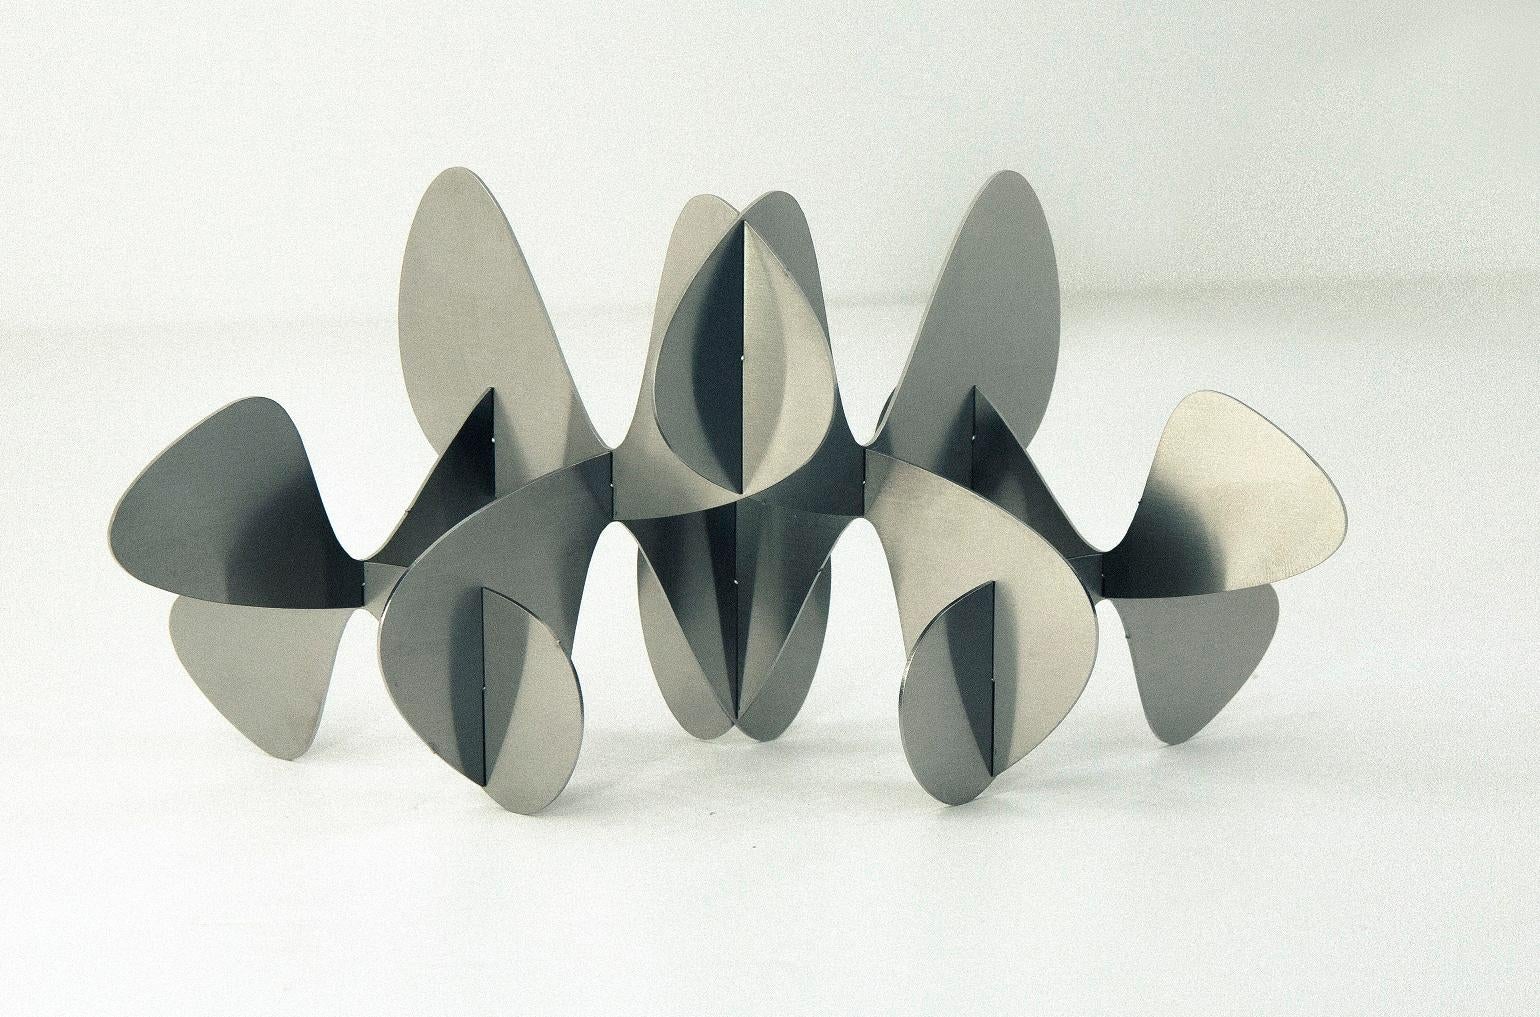 Barricada #2 ai S est une sculpture en acier inoxydable de l'artiste vénézuélien contemporain Alejandro Vega Beuvrin. 
Disponible en deux tailles :
(S) 37,5 cm × 65 cm × 25 cm, édition limitée de 8 + 4 A.P.
(M) 75 cm × 130 cm × 50 cm, édition